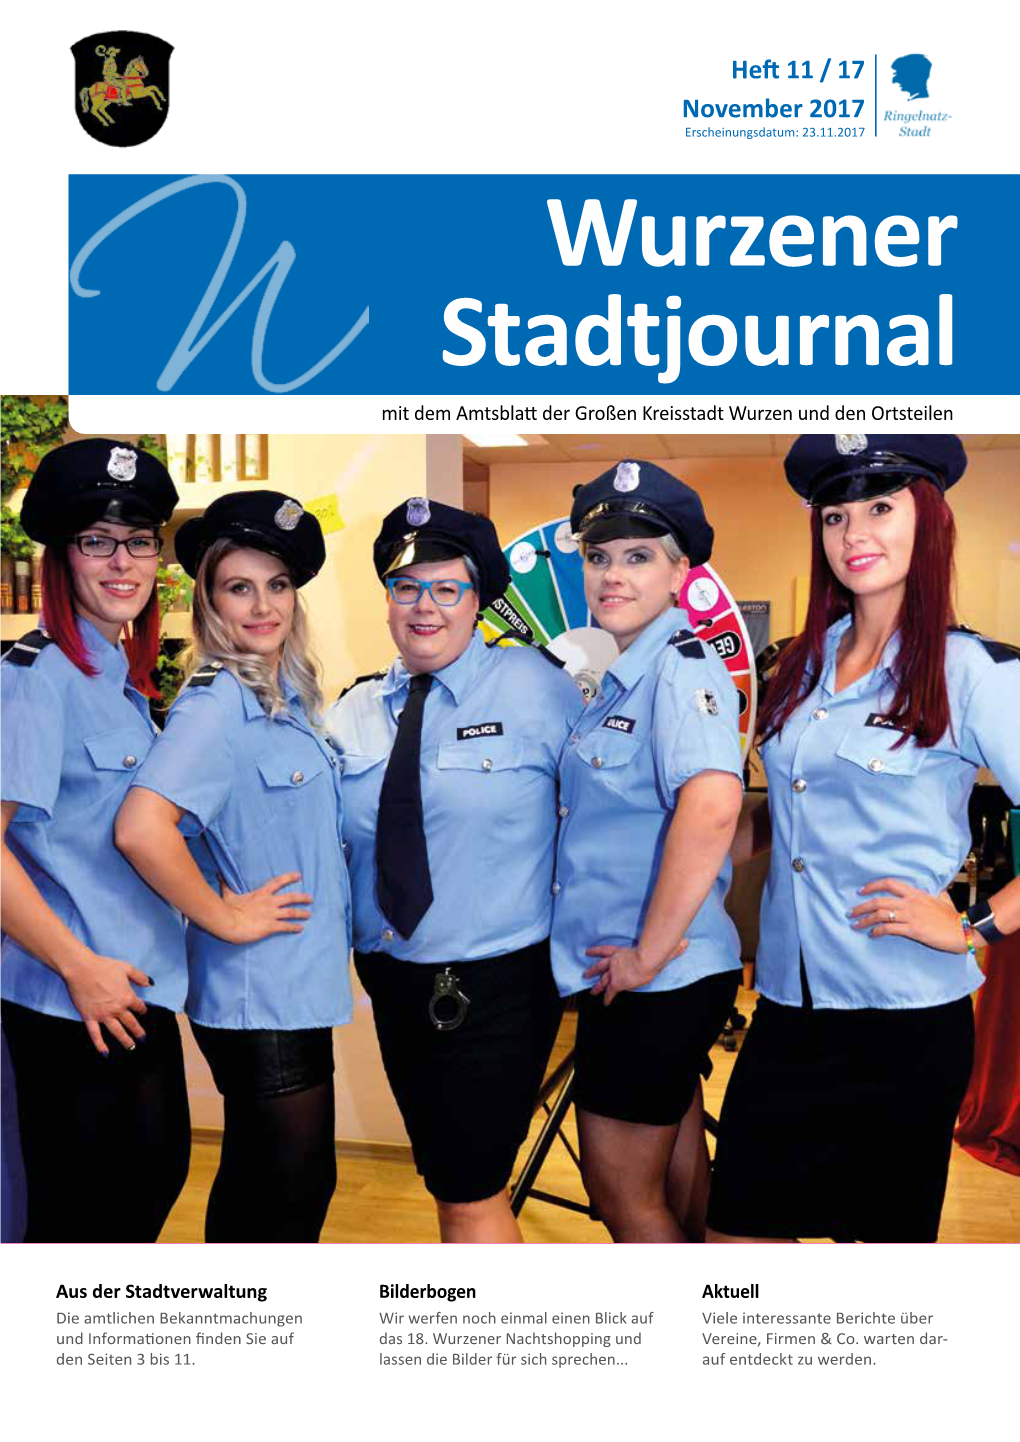 Wurzener Stadtjournal Mit Dem Amtsblatt Der Großen Kreisstadt Wurzen Und Den Ortsteilen